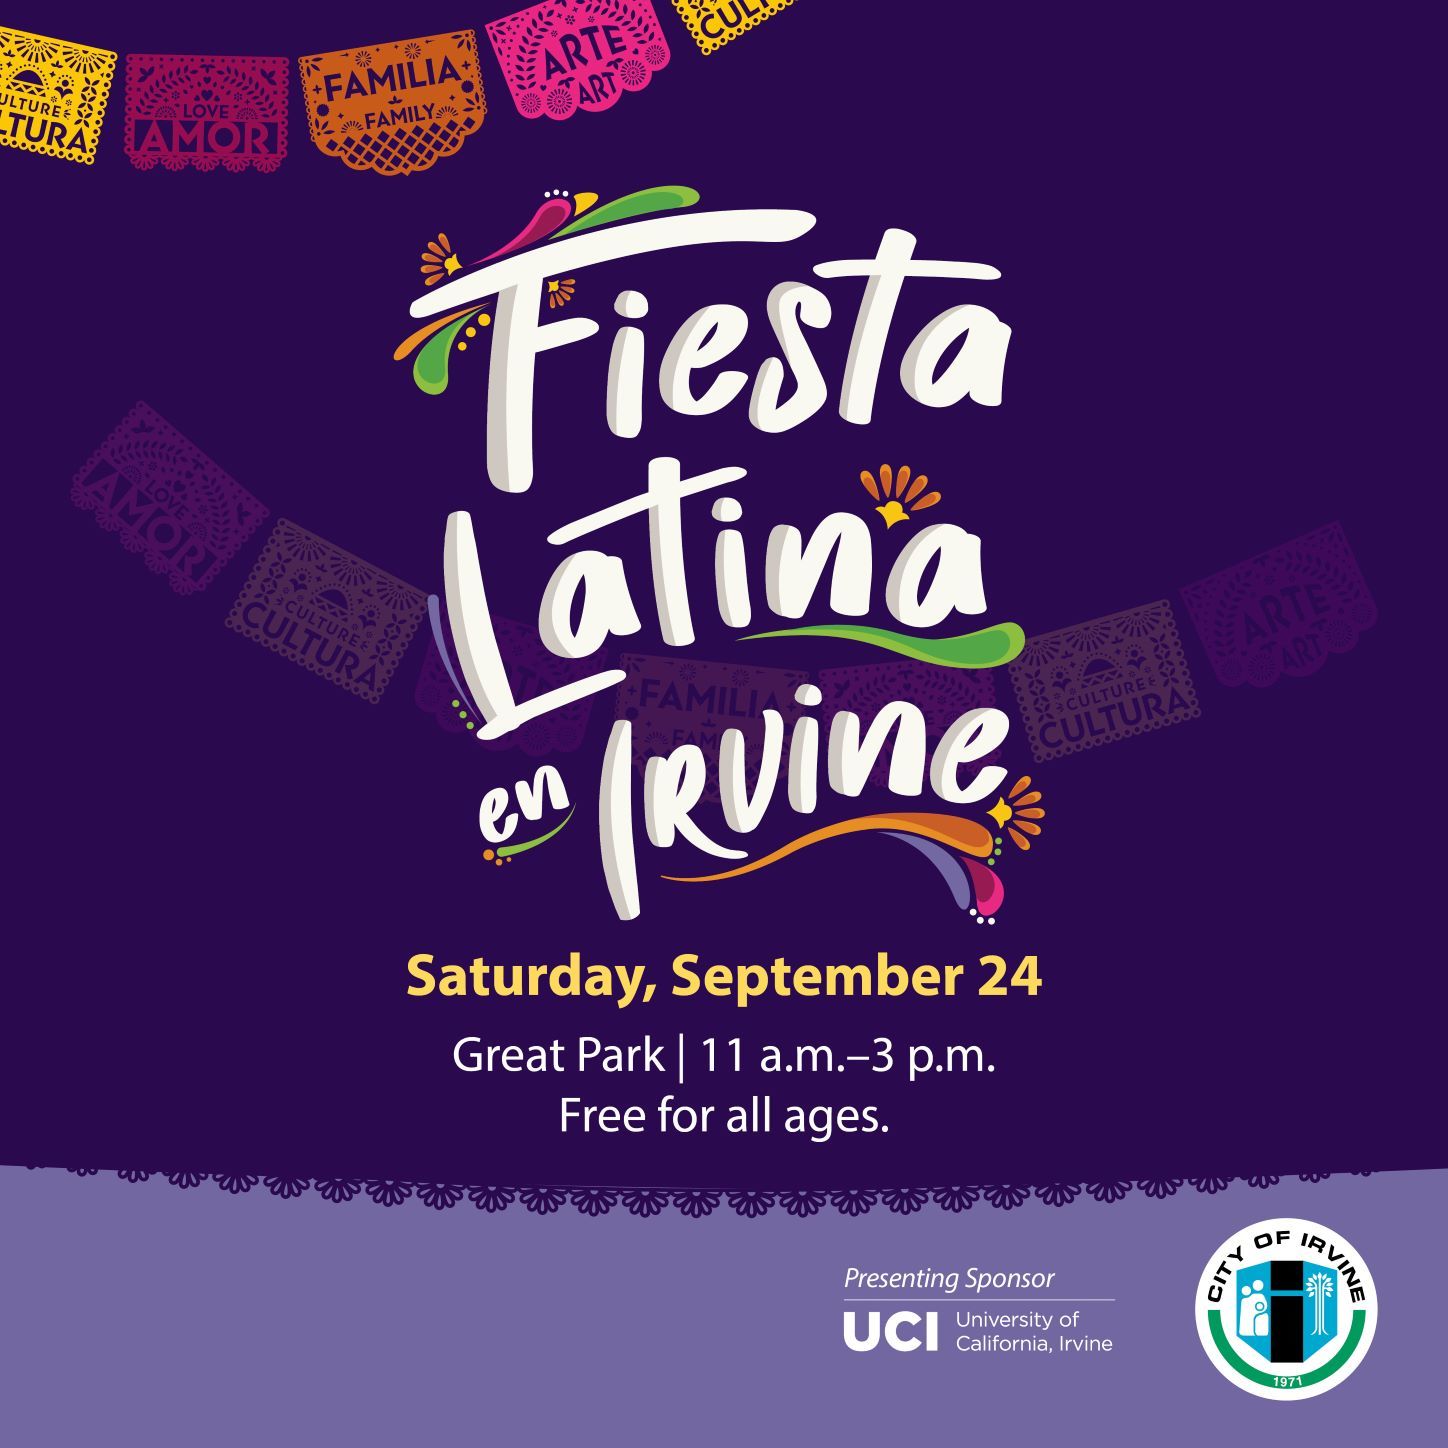 Fiesta Latina en Irvine